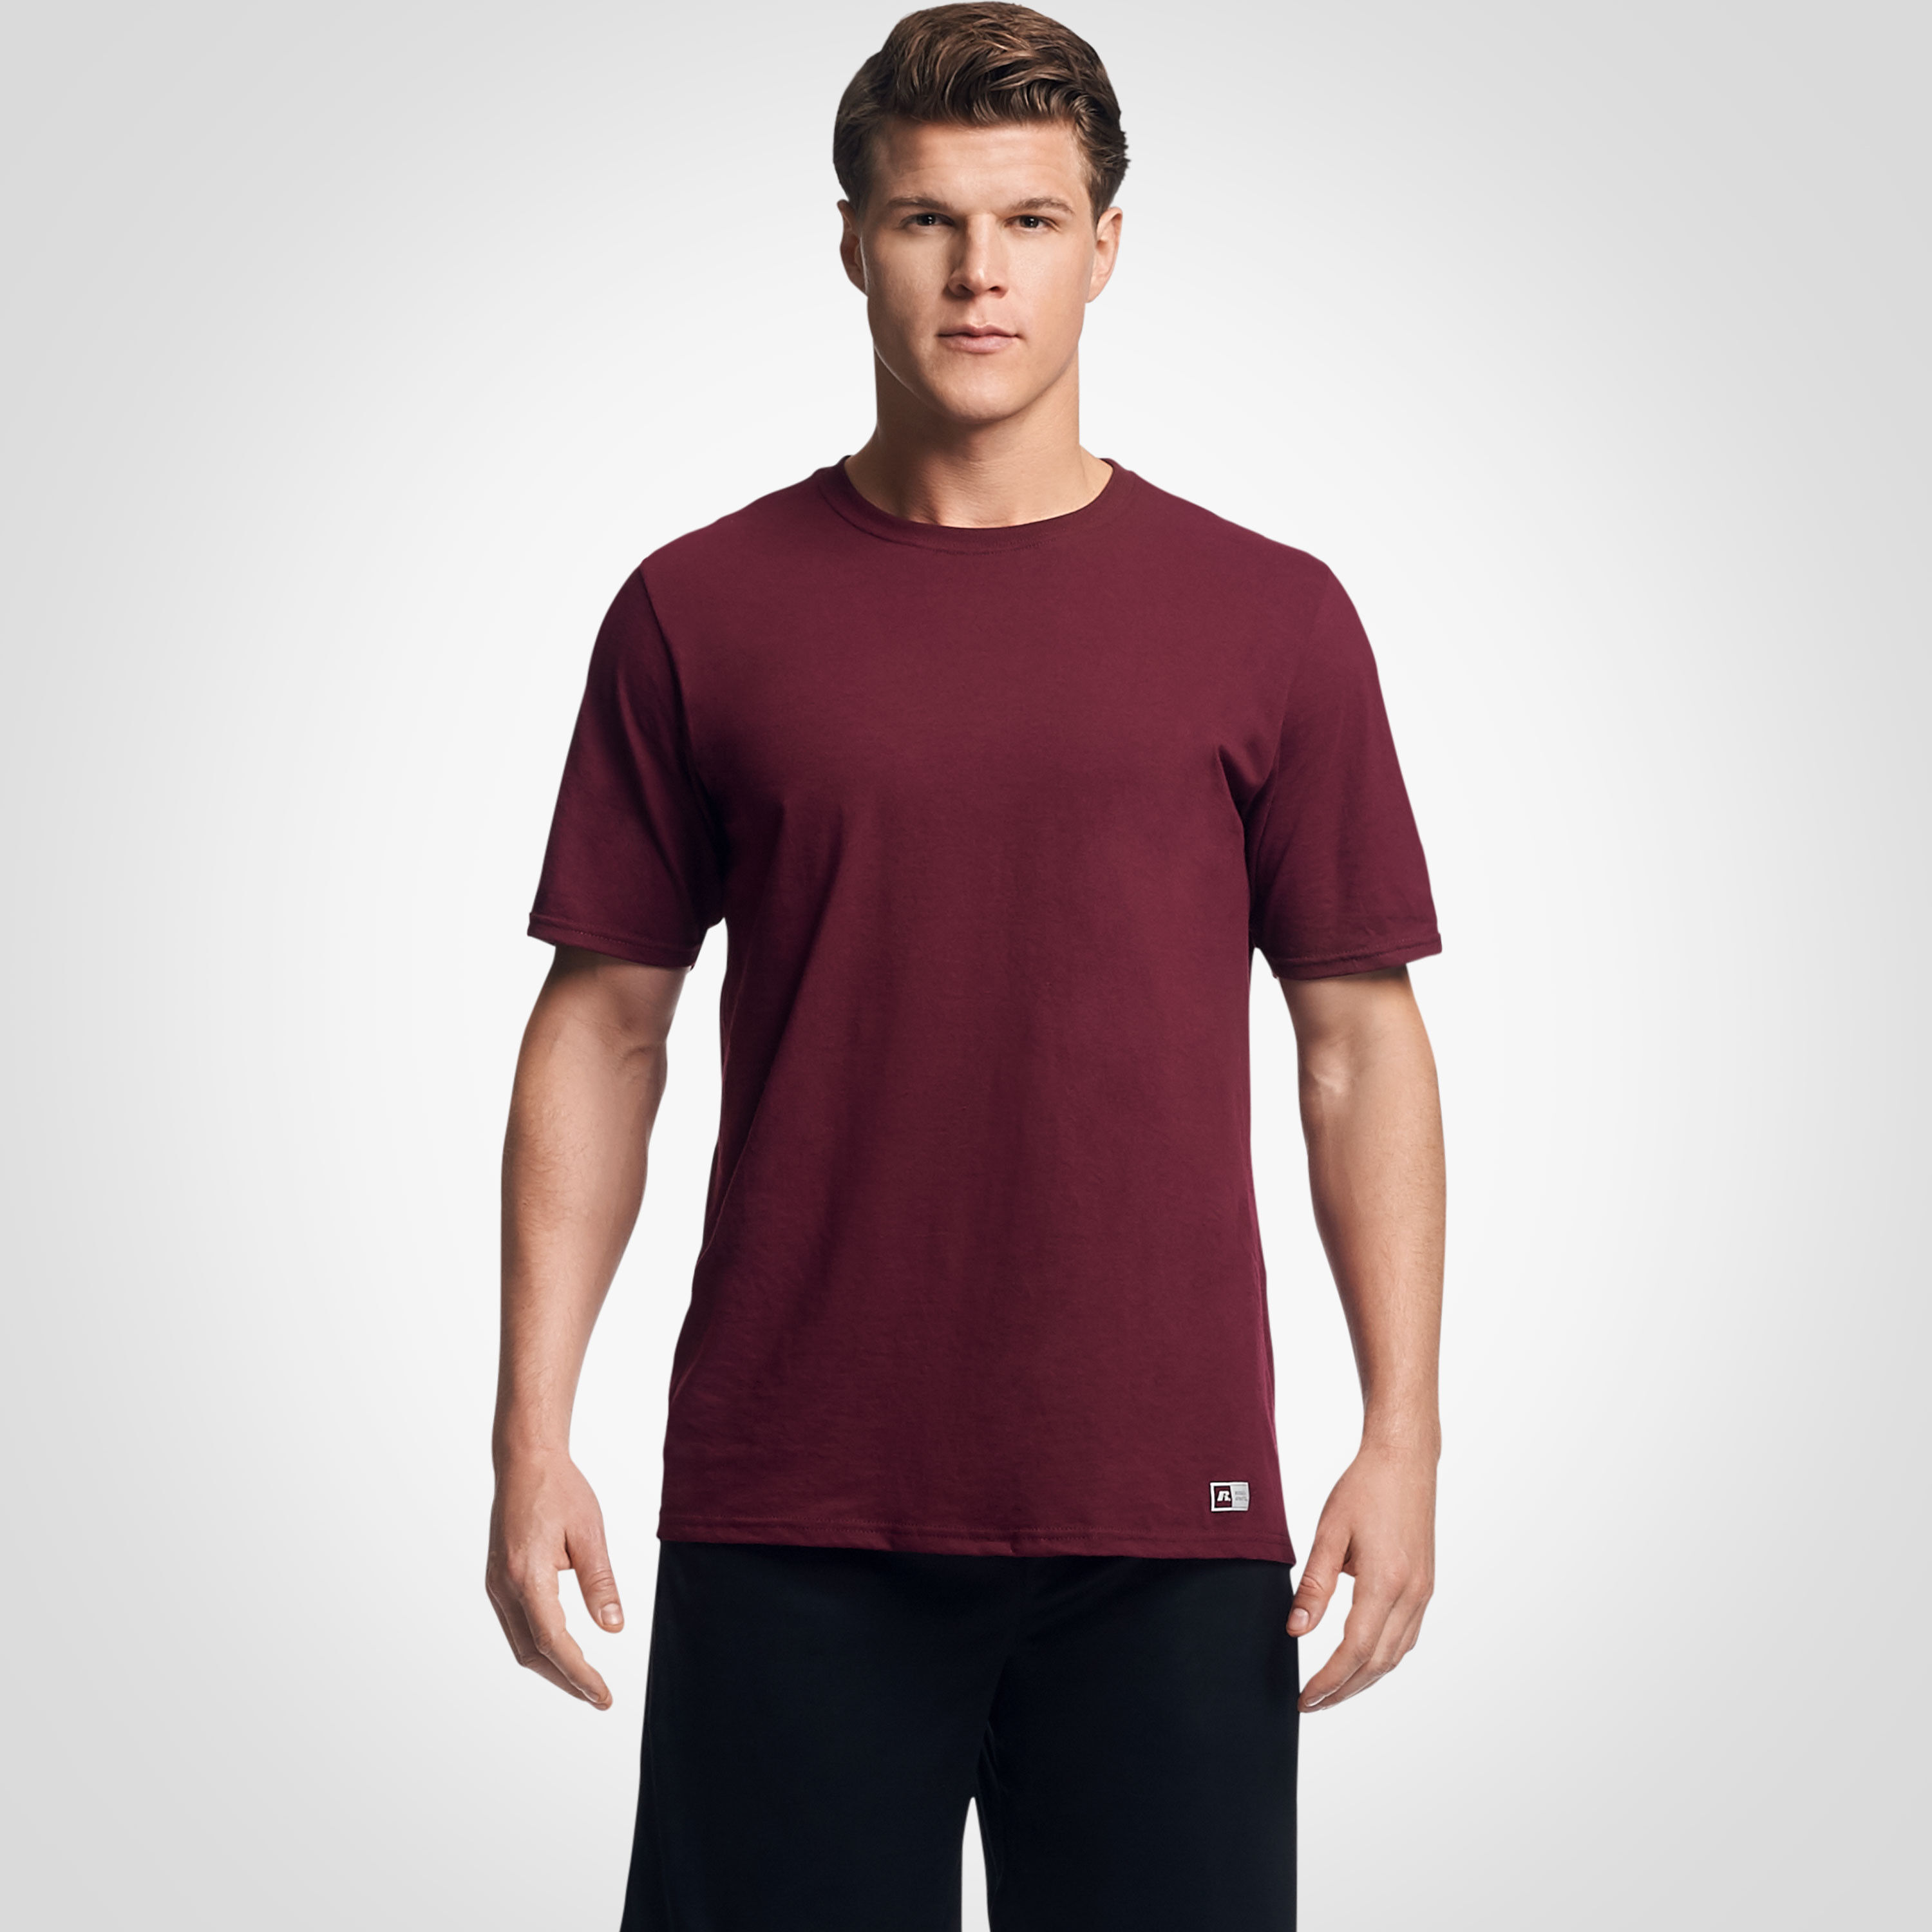 Men's Cotton Performance T-Shirt 